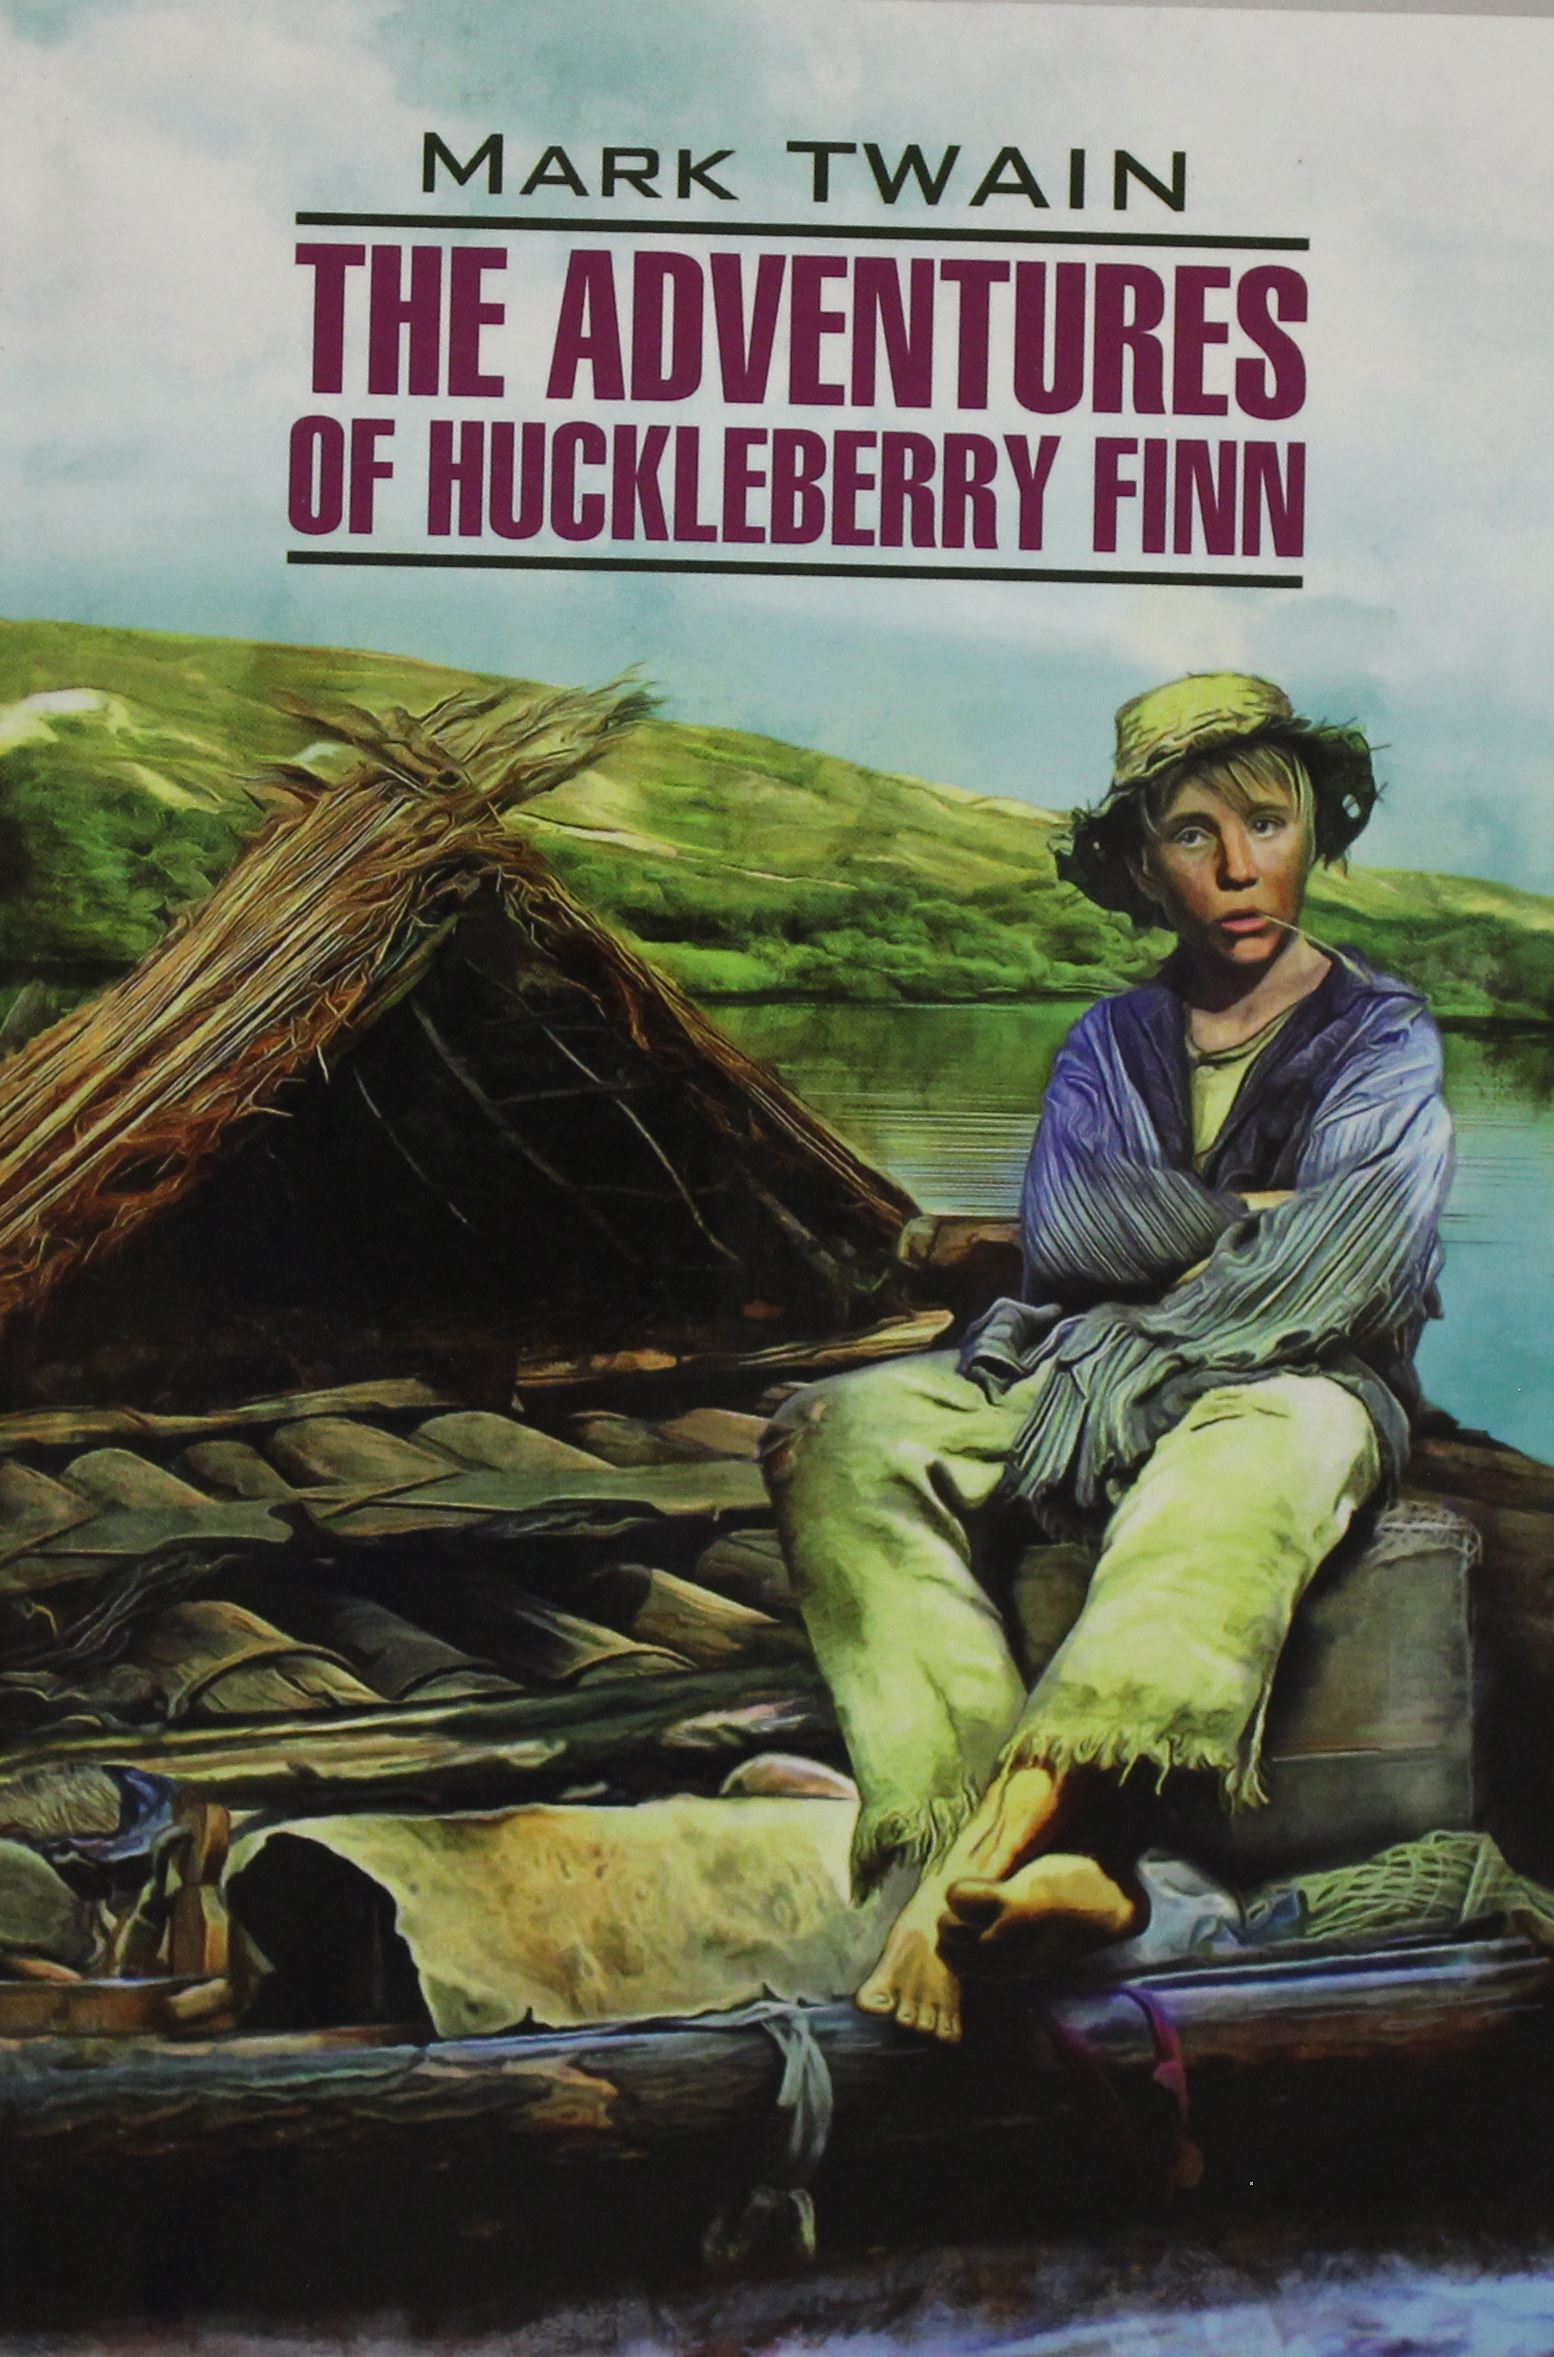 The adventures of huckleberry finn mark twain